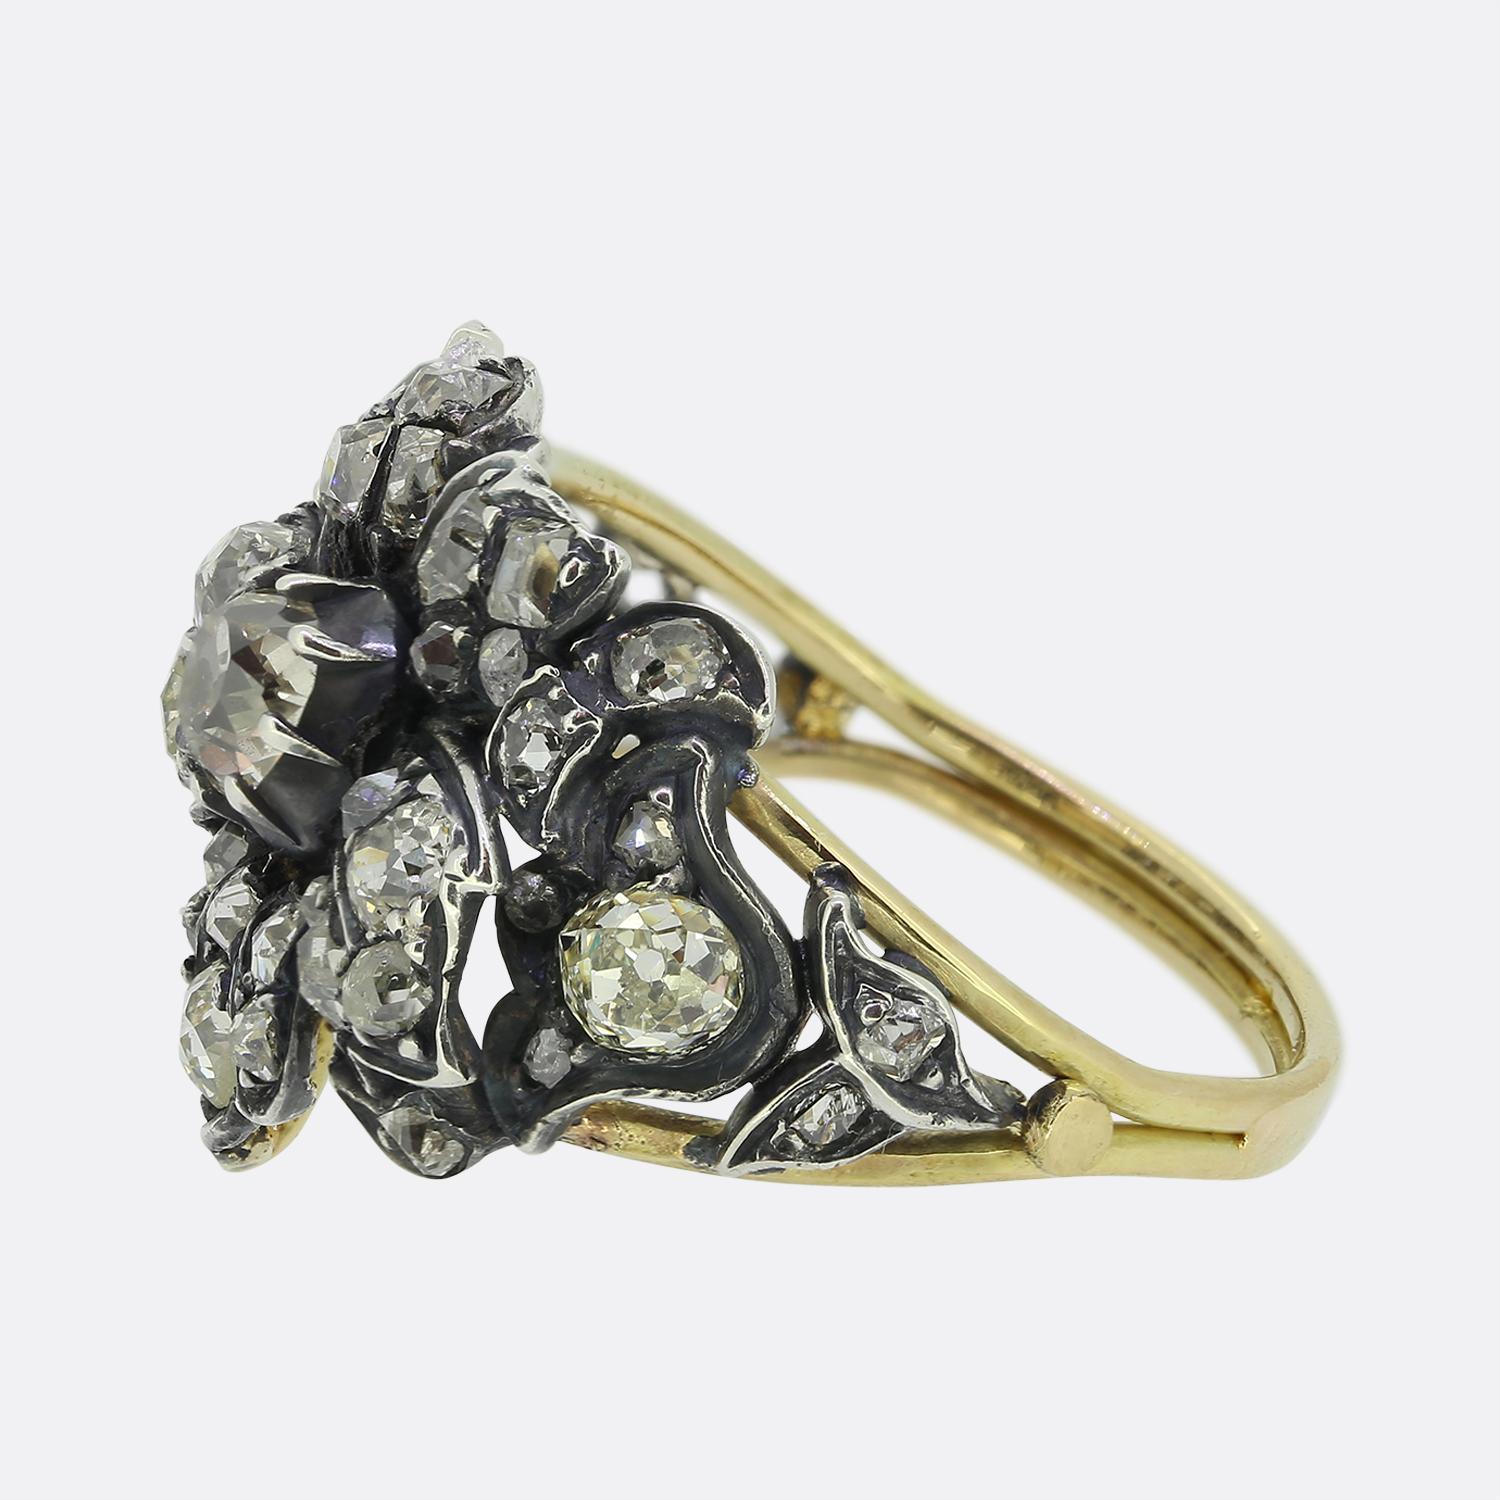 Hier haben wir einen wunderschönen Diamantring, der in einem Stil gefertigt wurde, der an die späte georgianische und frühe viktorianische Zeit erinnert. Ein einzelner Diamant im alten Minenschliff sitzt stolz in der Mitte der Vorderseite in einer